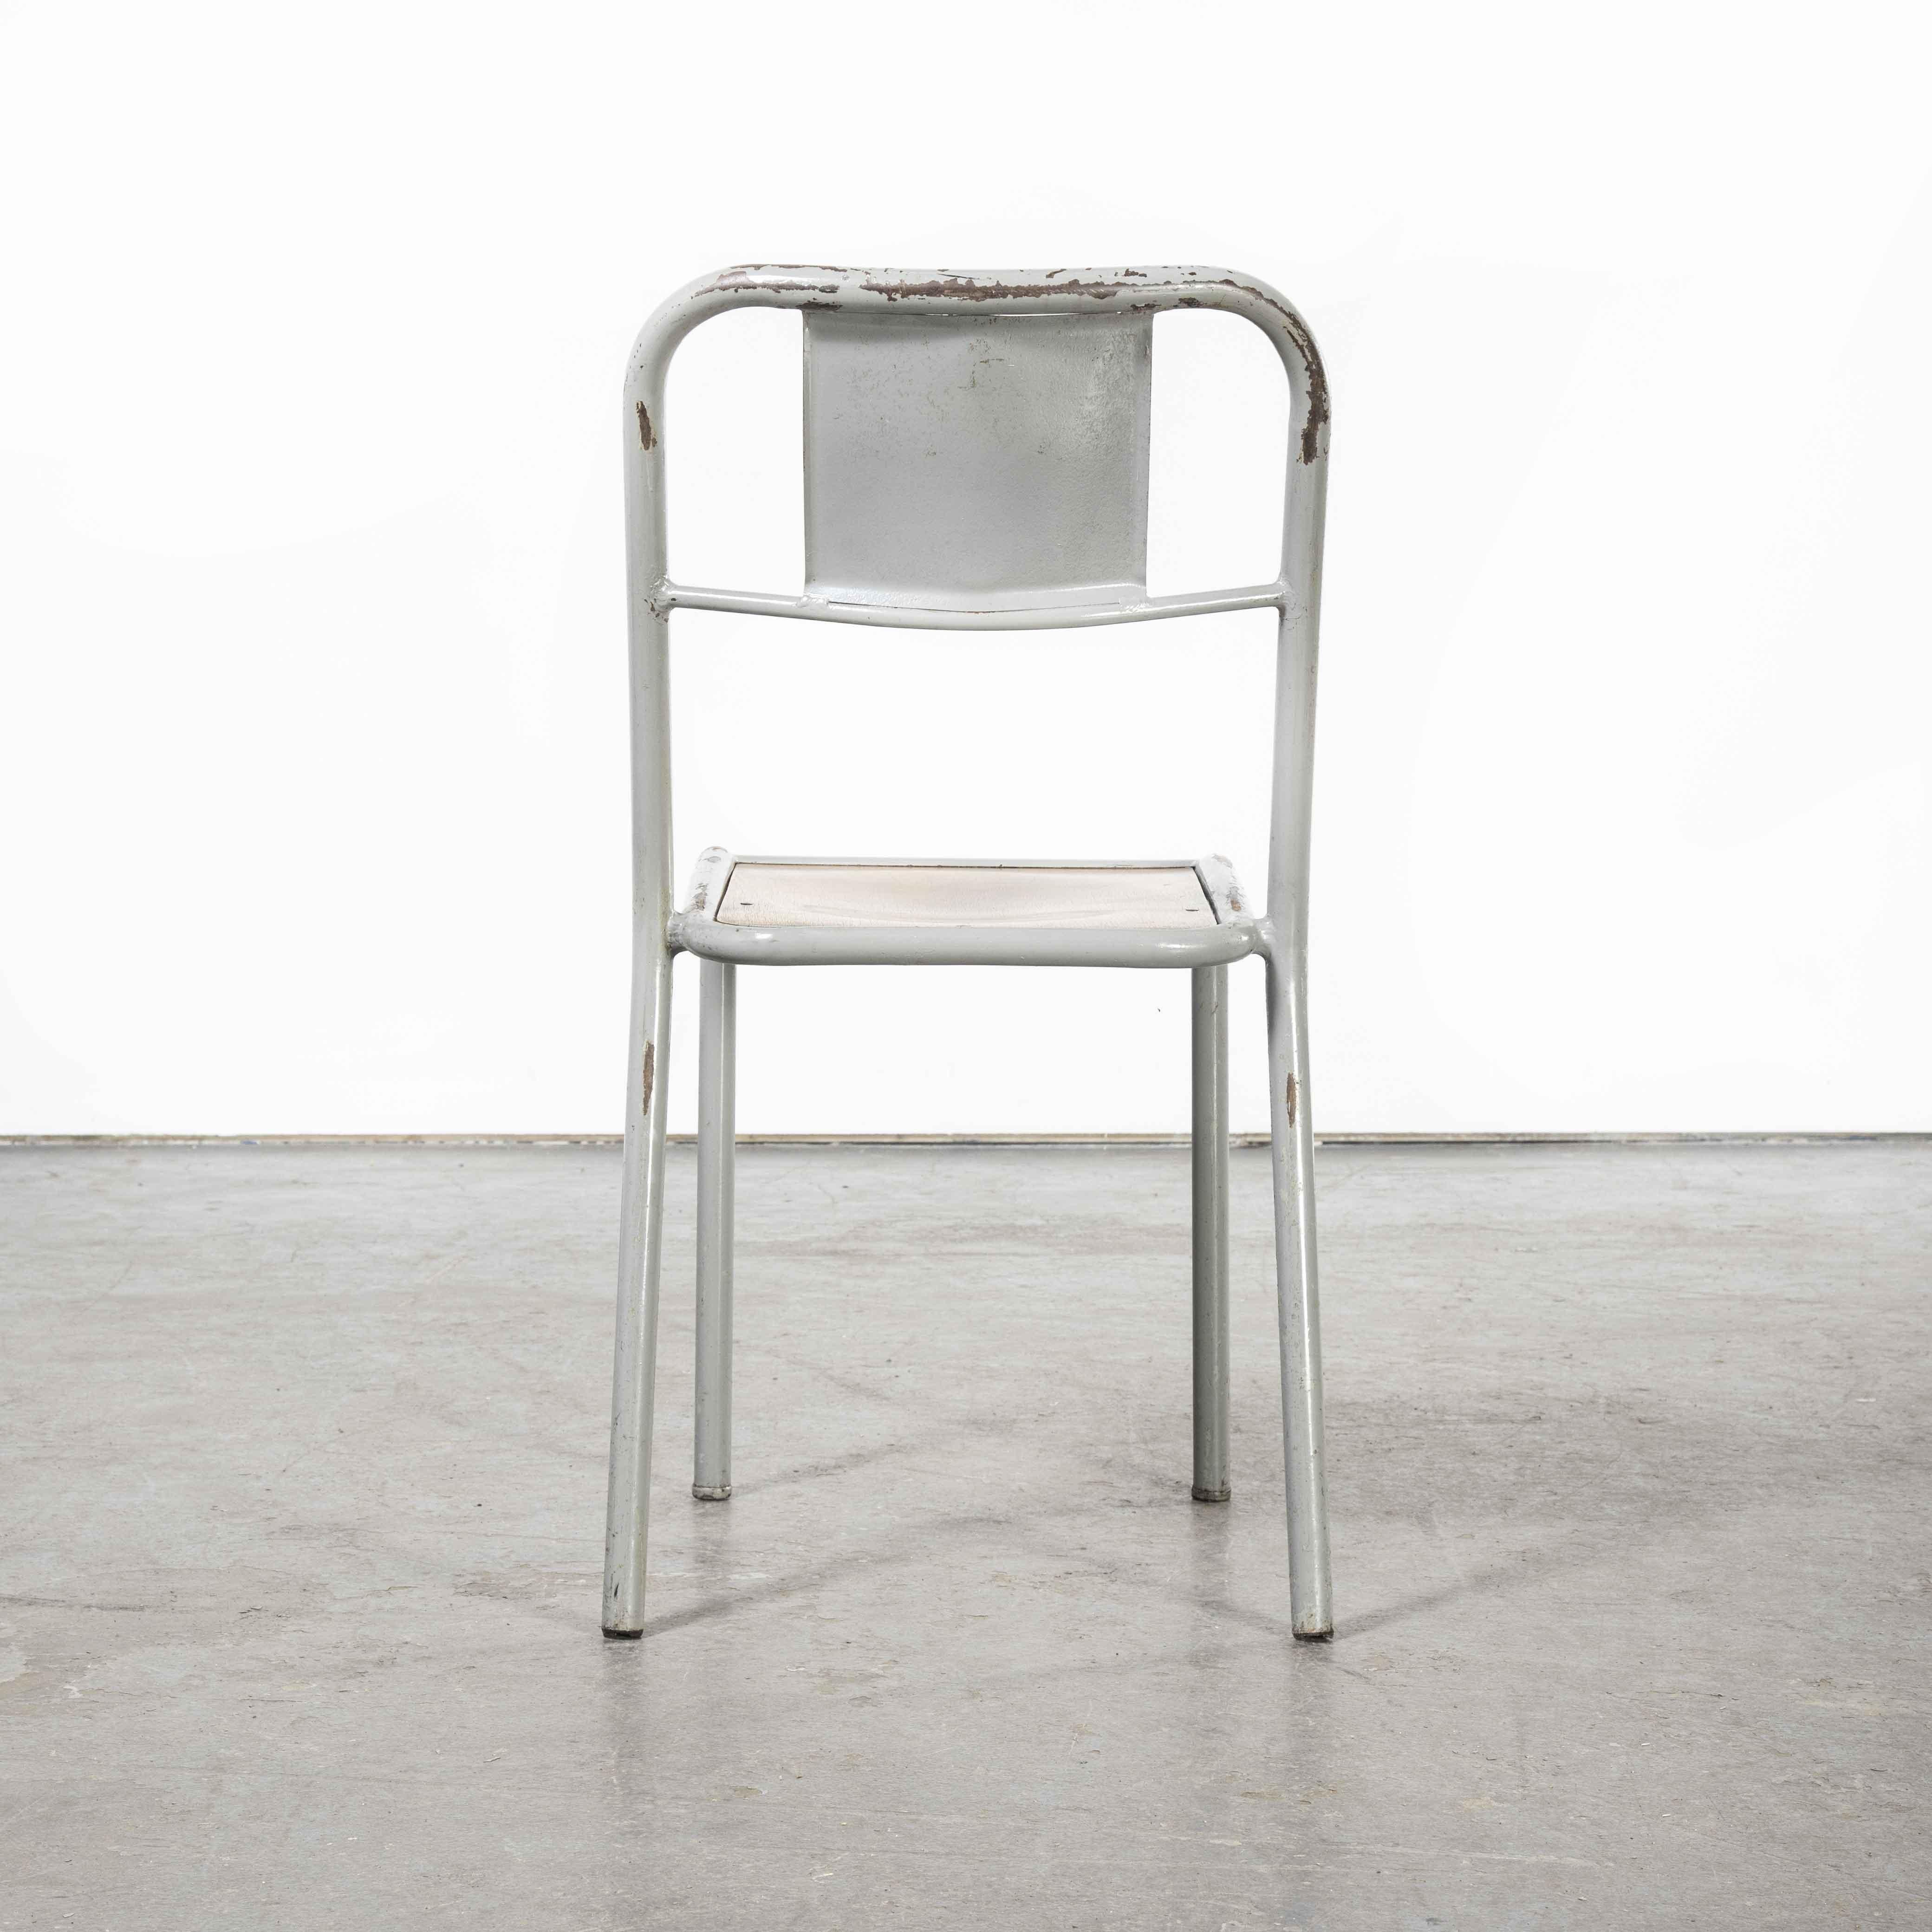 1950's French Mullca Stapel-Esszimmerstühle grau mit Holzsitz - verschiedene Mengen verfügbar

1950's French Mullca Stapel-Esszimmerstühle grau mit Holzsitz - verschiedene Mengen verfügbar. Robert Muller und Gaston Cavaillon, einer unserer